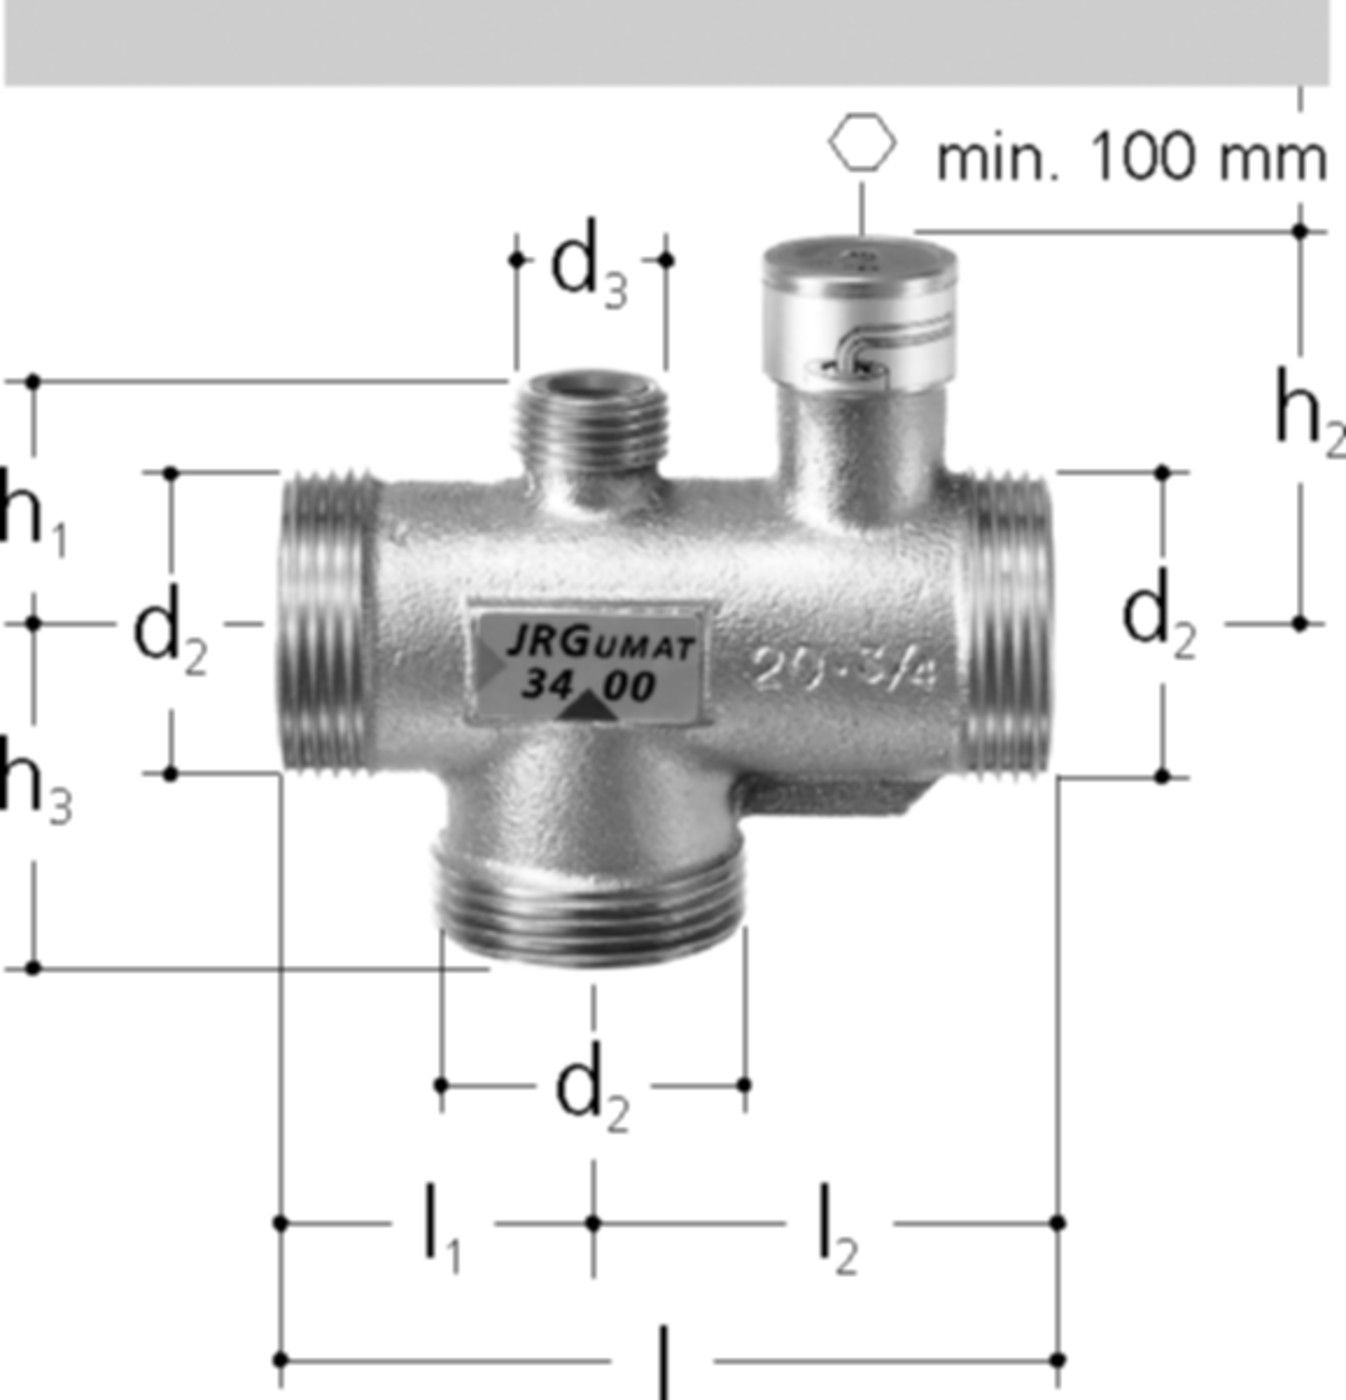 JRGUMAT Thermomischer PN 10 1" DN 25 25°C 3400.930 - JRG Armaturen